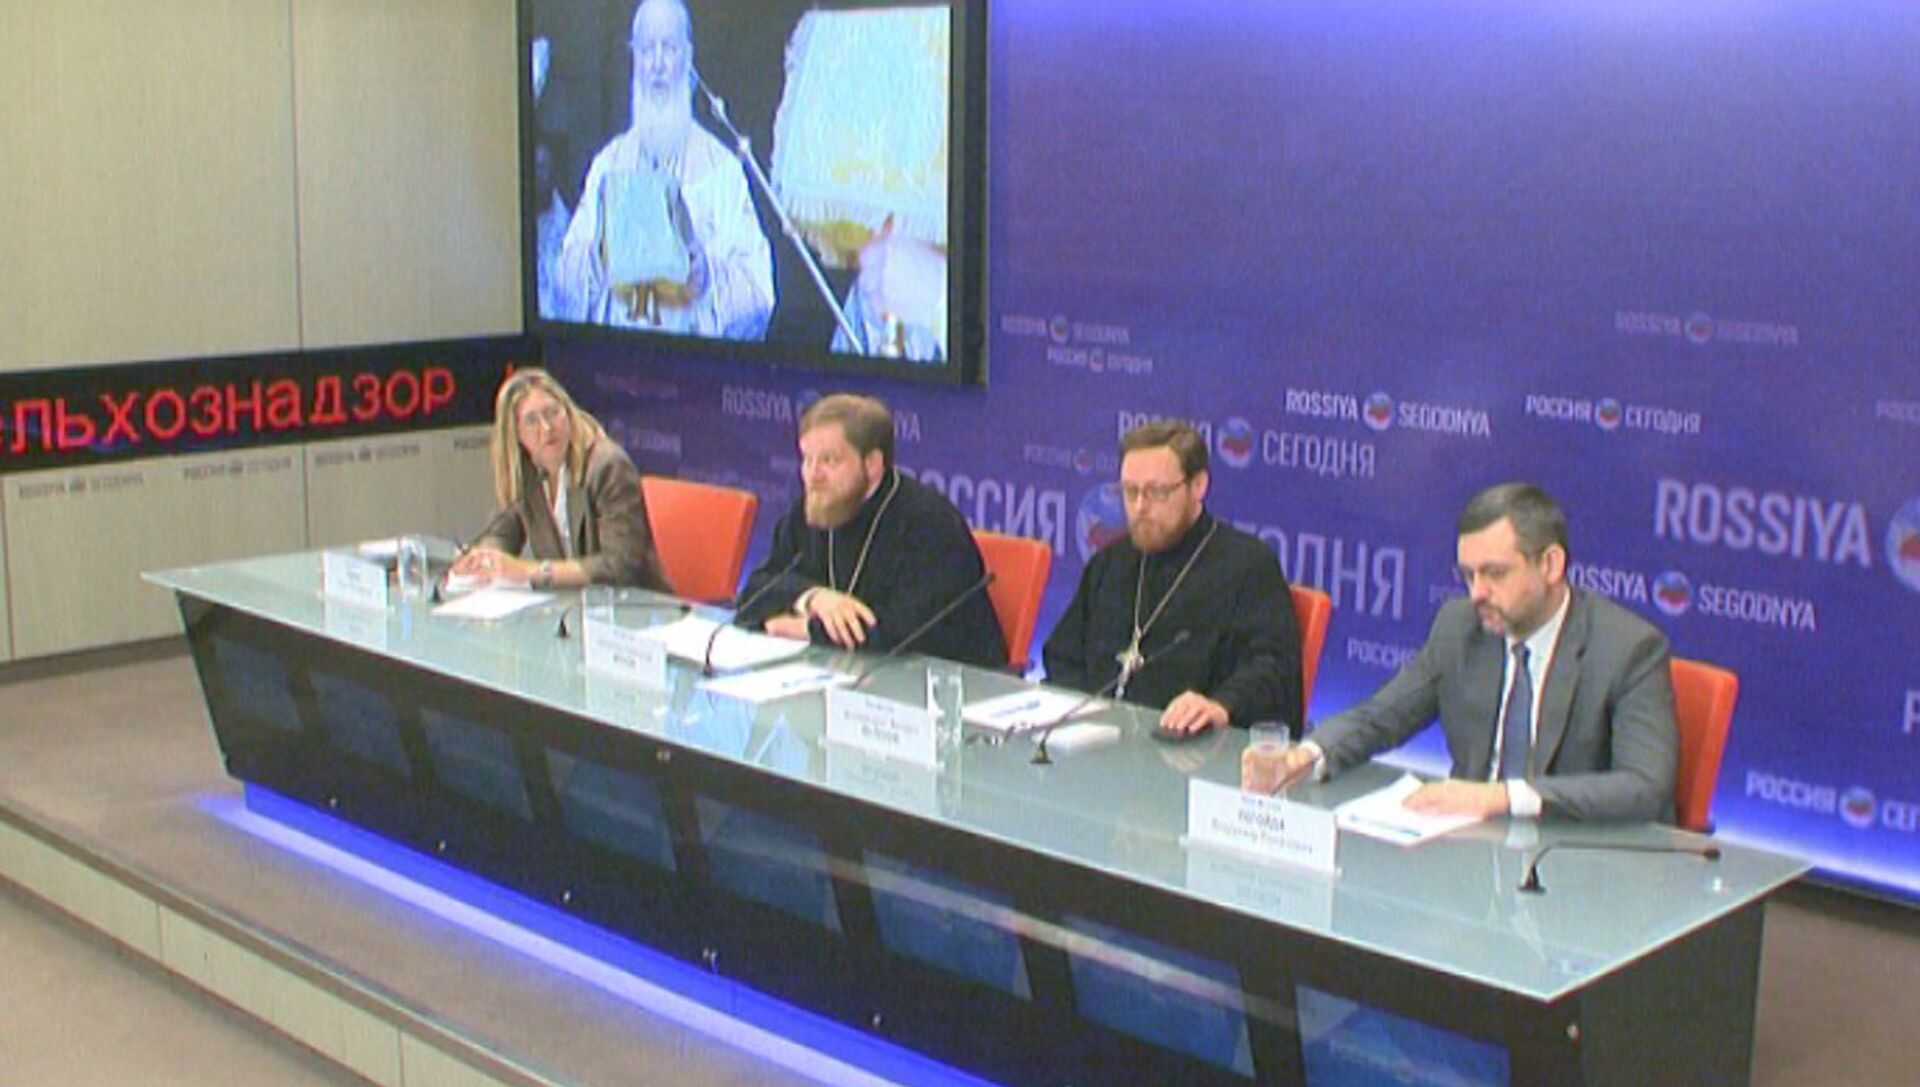 Представители РПЦ рассказали о встрече патриарха с папой римским на Кубе - РИА Новости, 1920, 24.02.2016